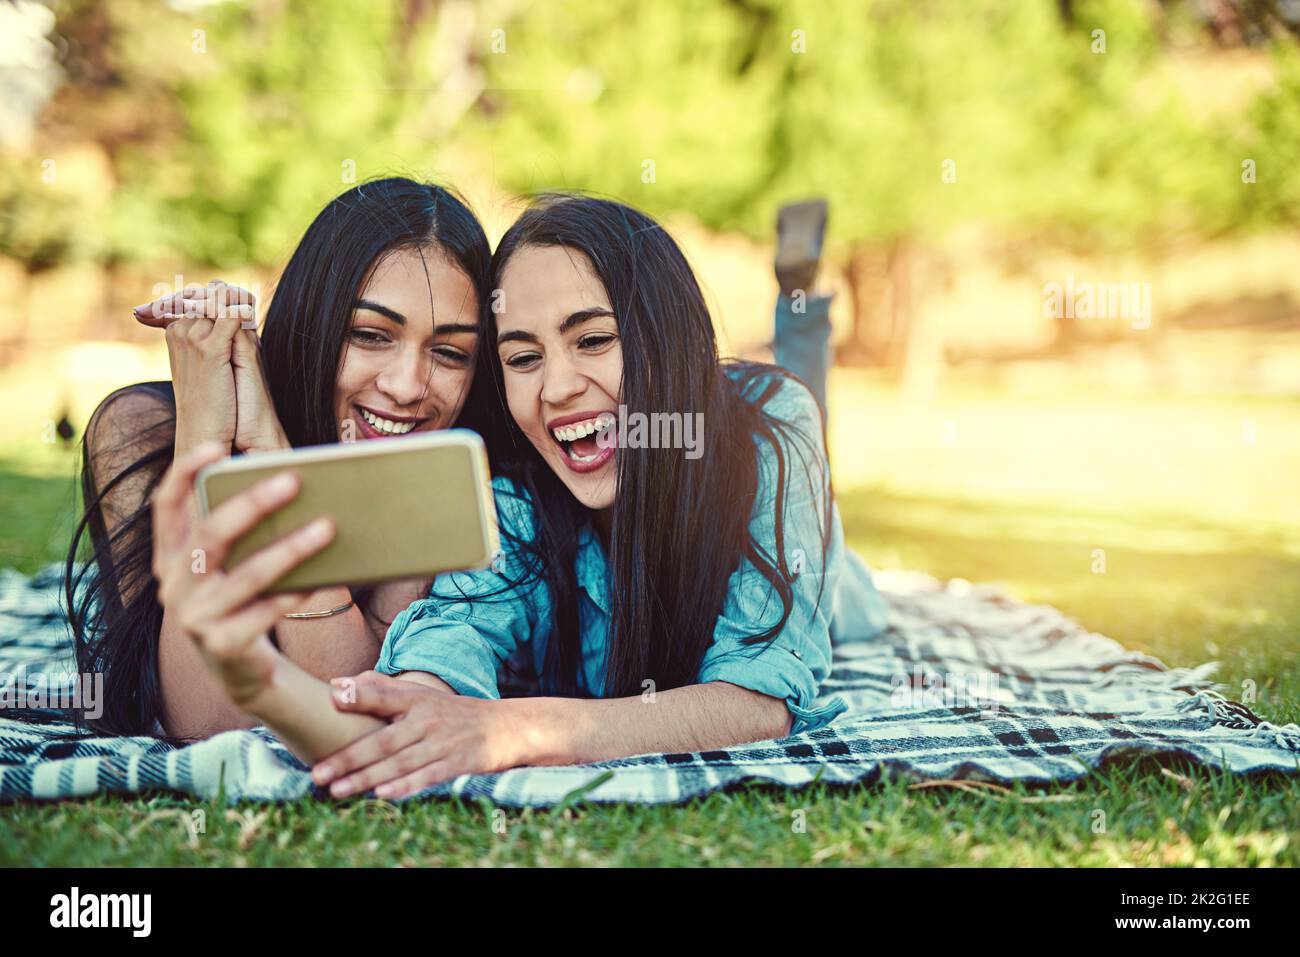 Il faut prendre quelques selfies estival. Photo courte de deux jeunes amis qui prennent un selfie ensemble dans le parc. Banque D'Images